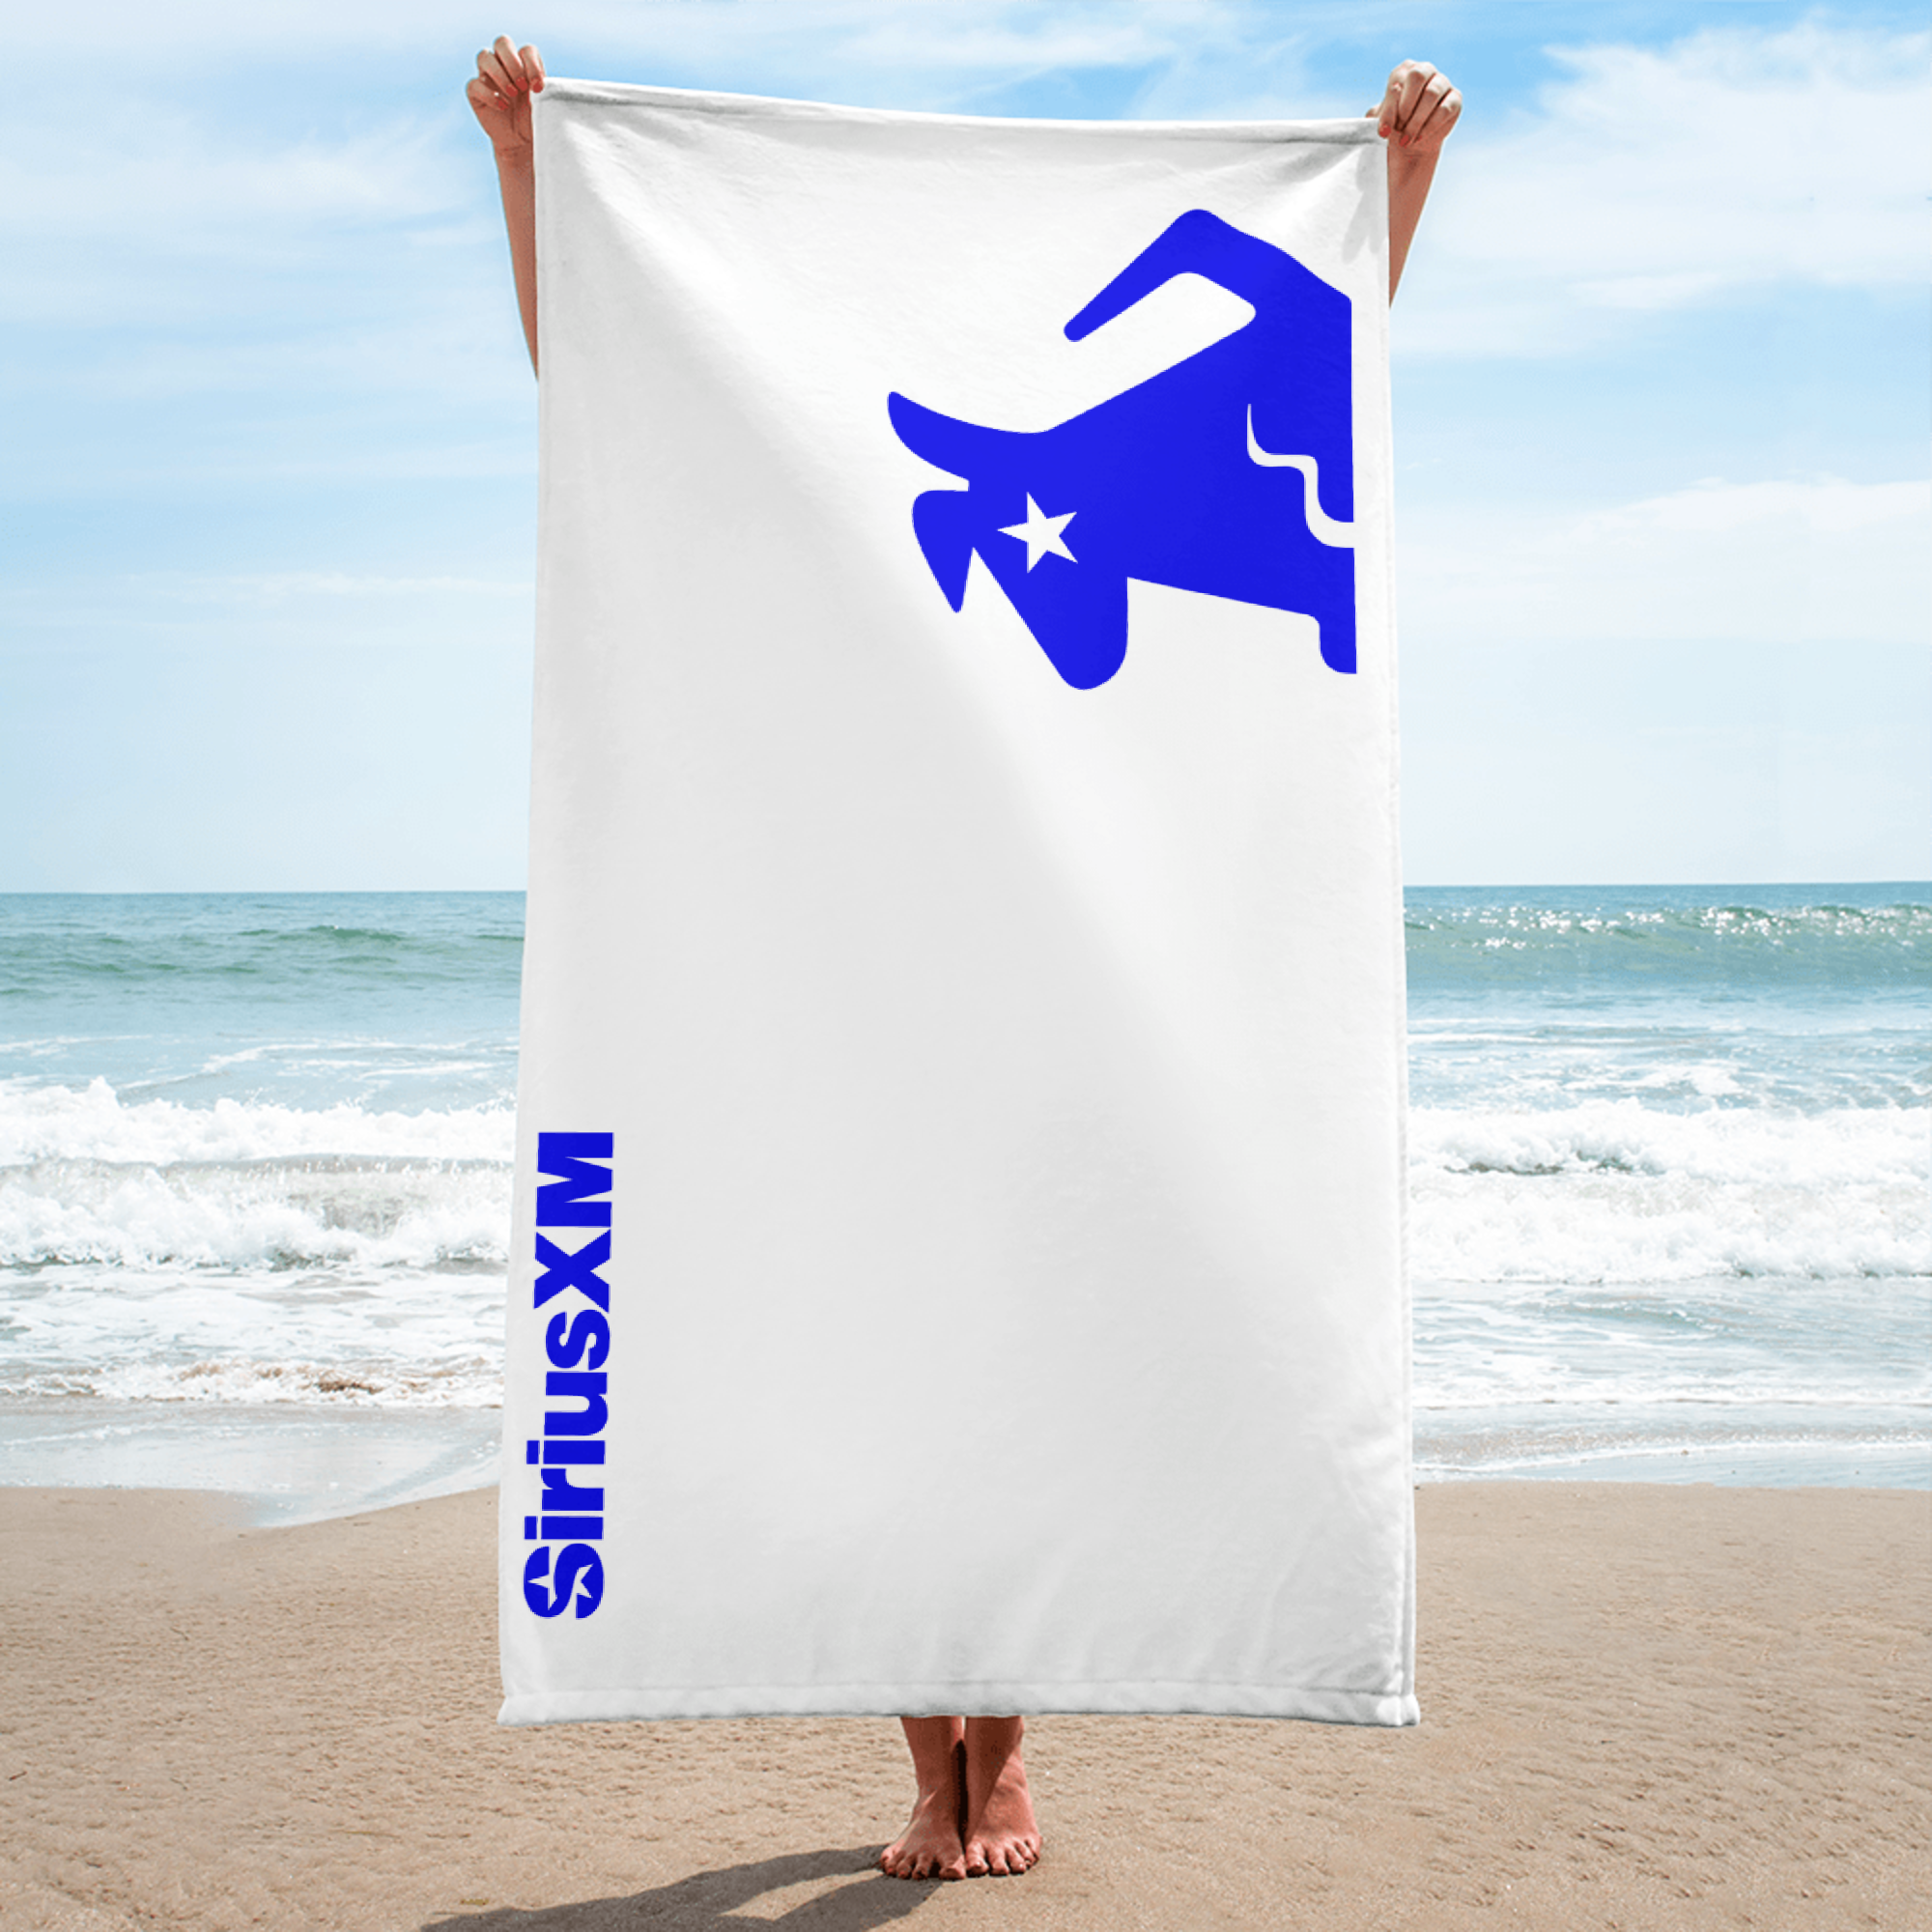 SiriusXM: Next Gen Blue Stella Towel